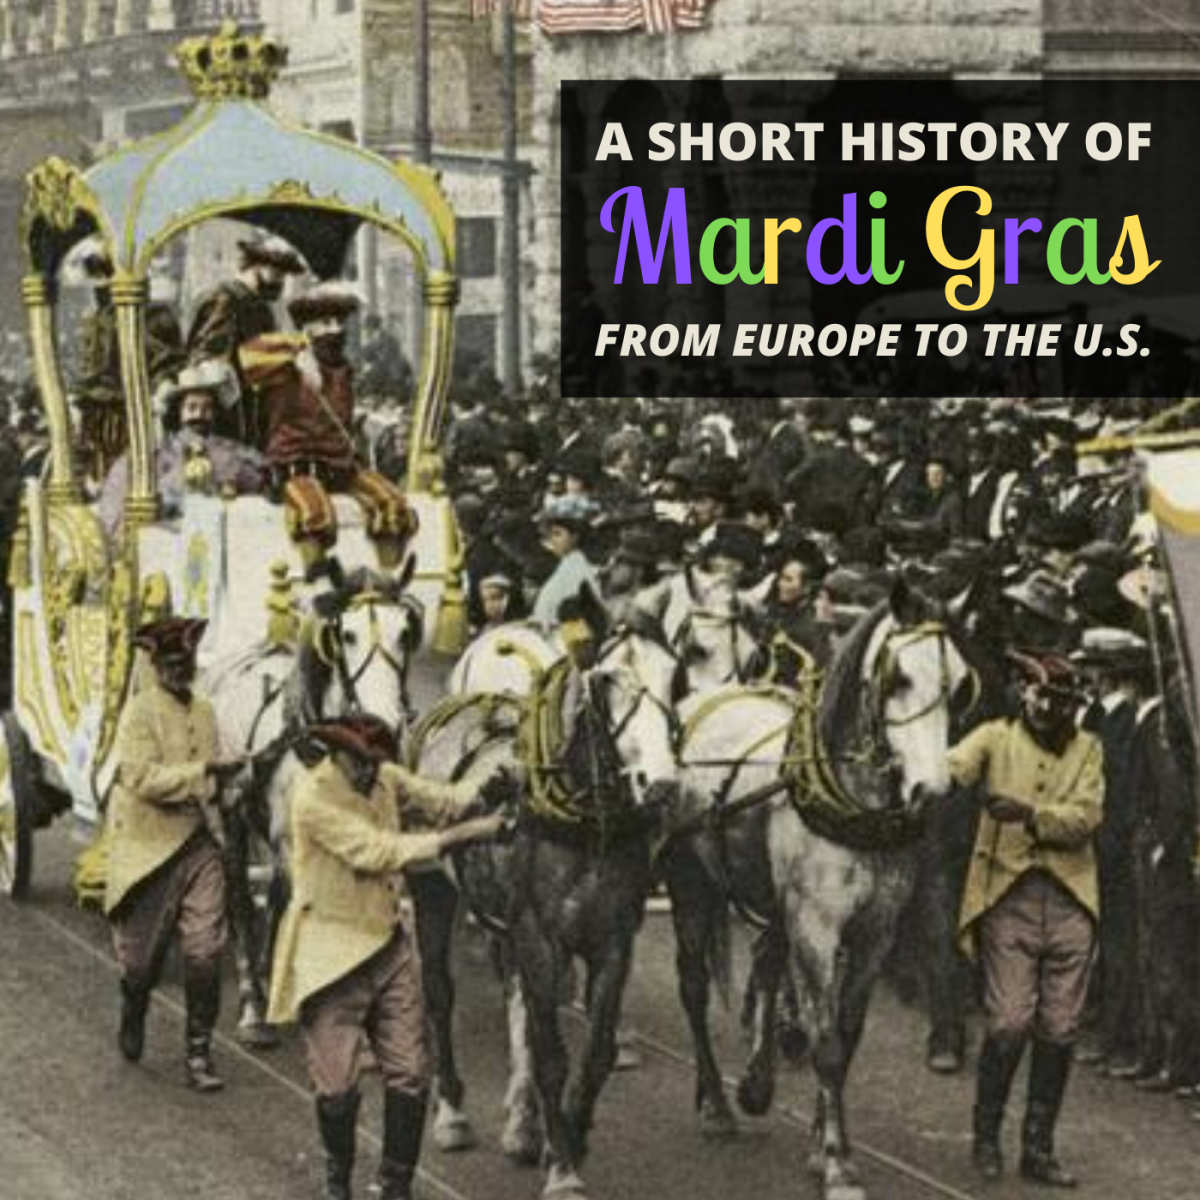 A Brief History of Mardi Gras in America